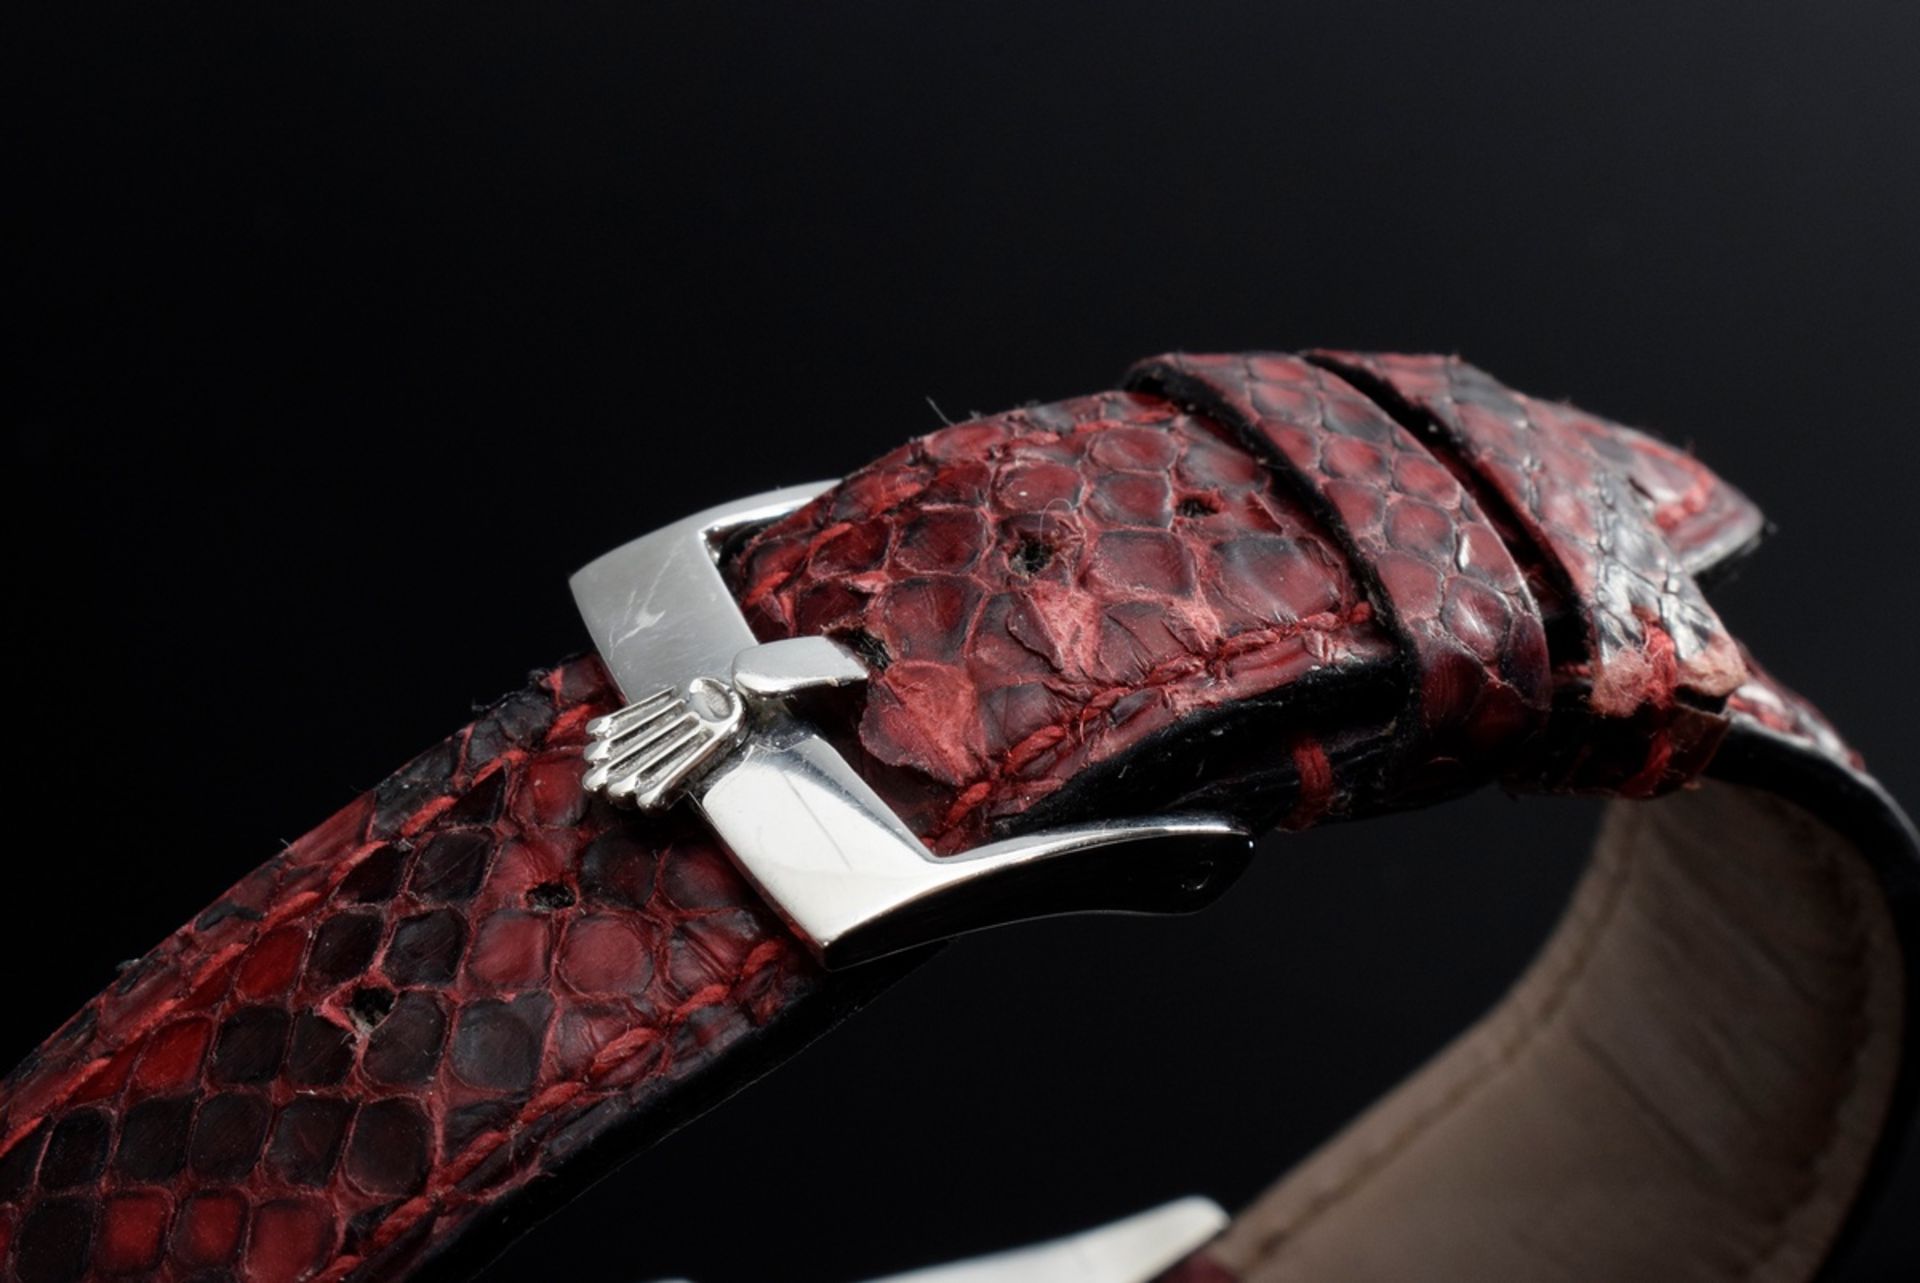 Rolex "Oysterdate Precision" Armbanduhr, Stahl, Handaufzug, römische Ziffern, große Sekunde, Datum  - Bild 4 aus 6